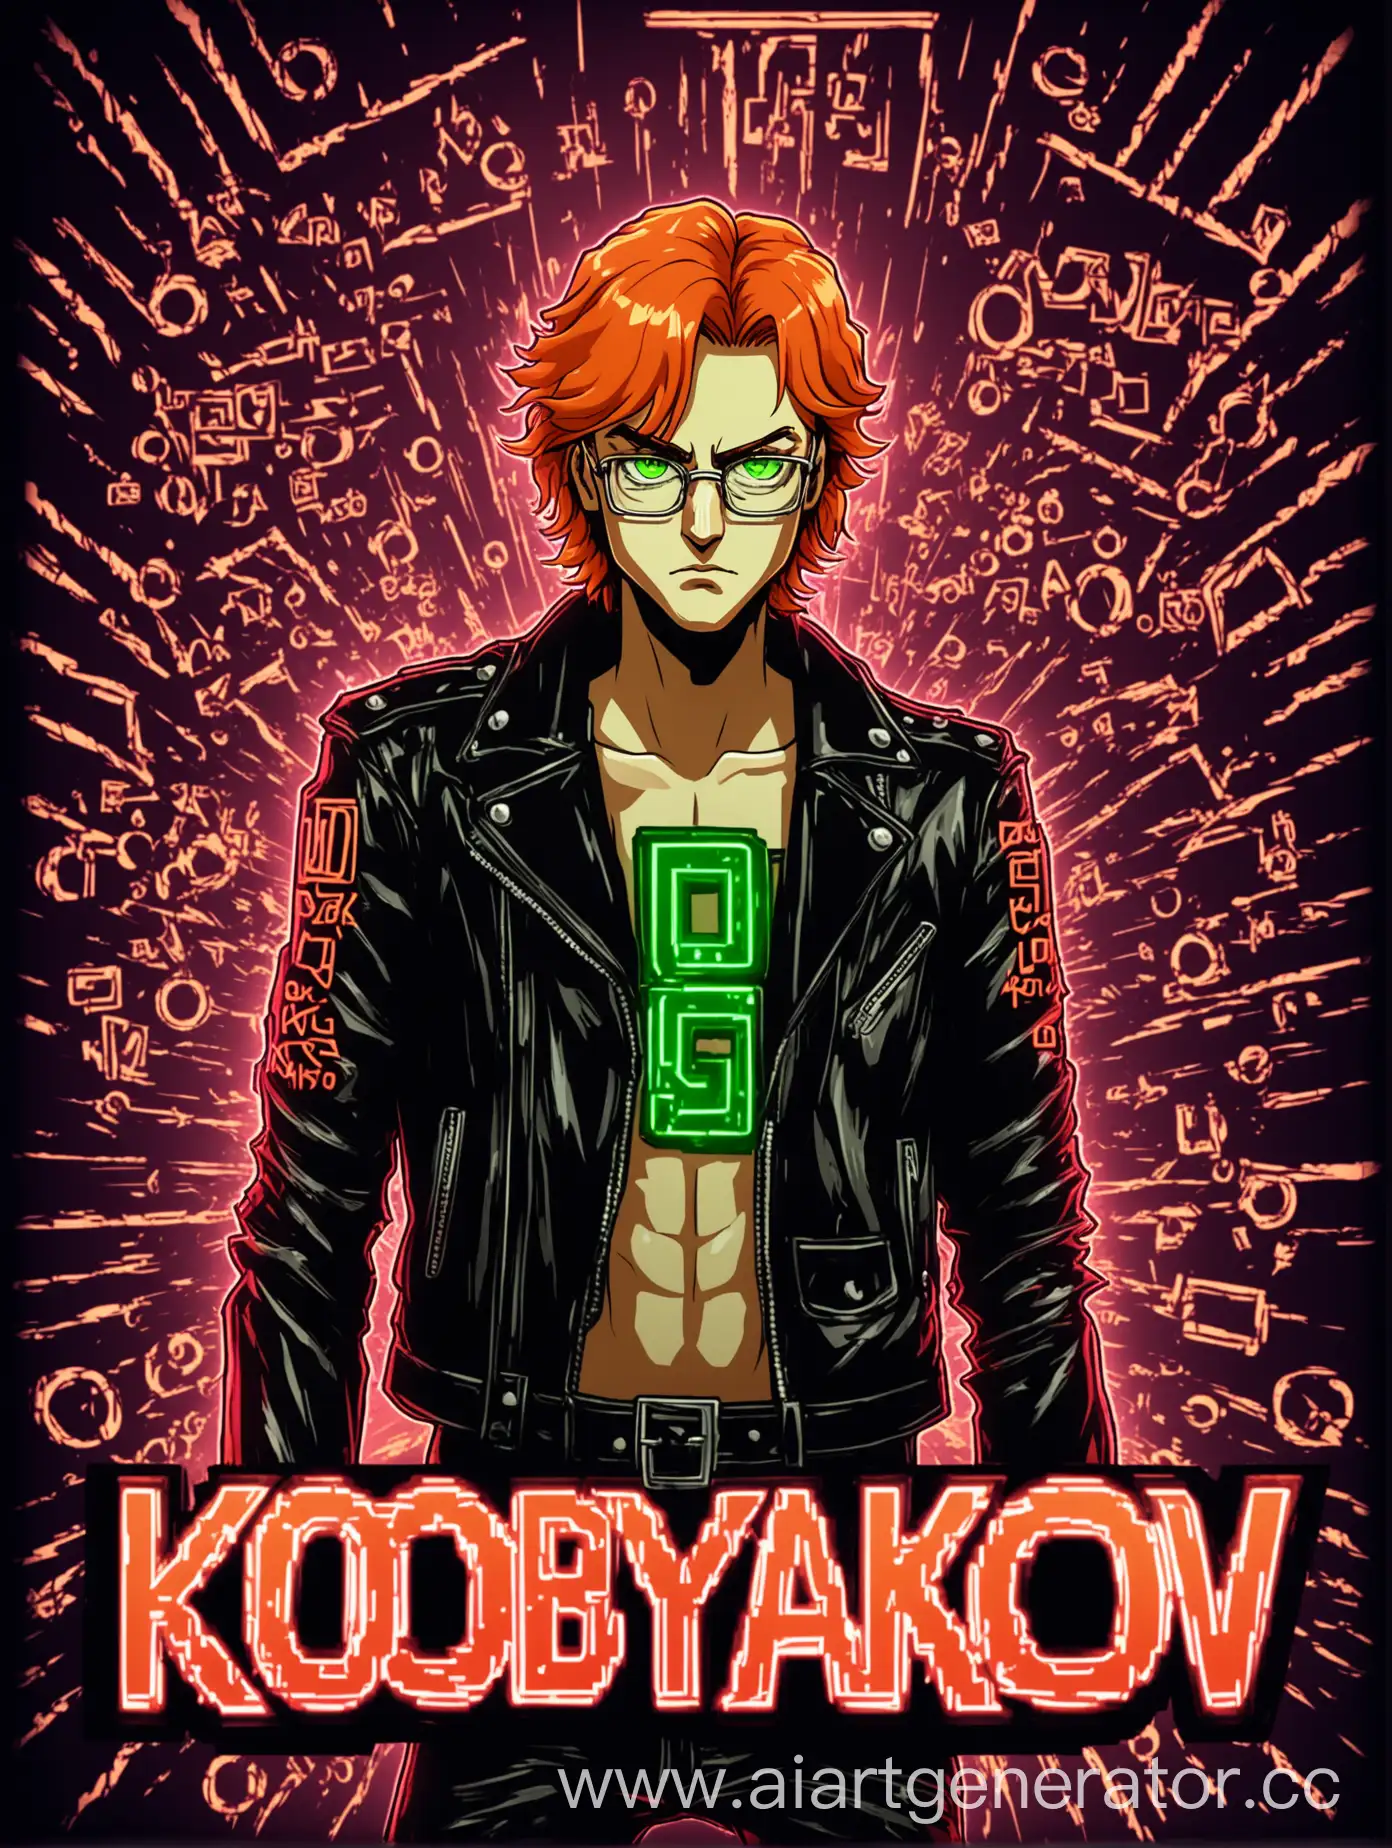 Мужчина лет 26,чёрная куртка,очки,оранжевые волосы,зелёные глаза,в минске,красное свечение,в стиле ДжоДжо,4к,2д,его имя Кобяков,электрические буквы.